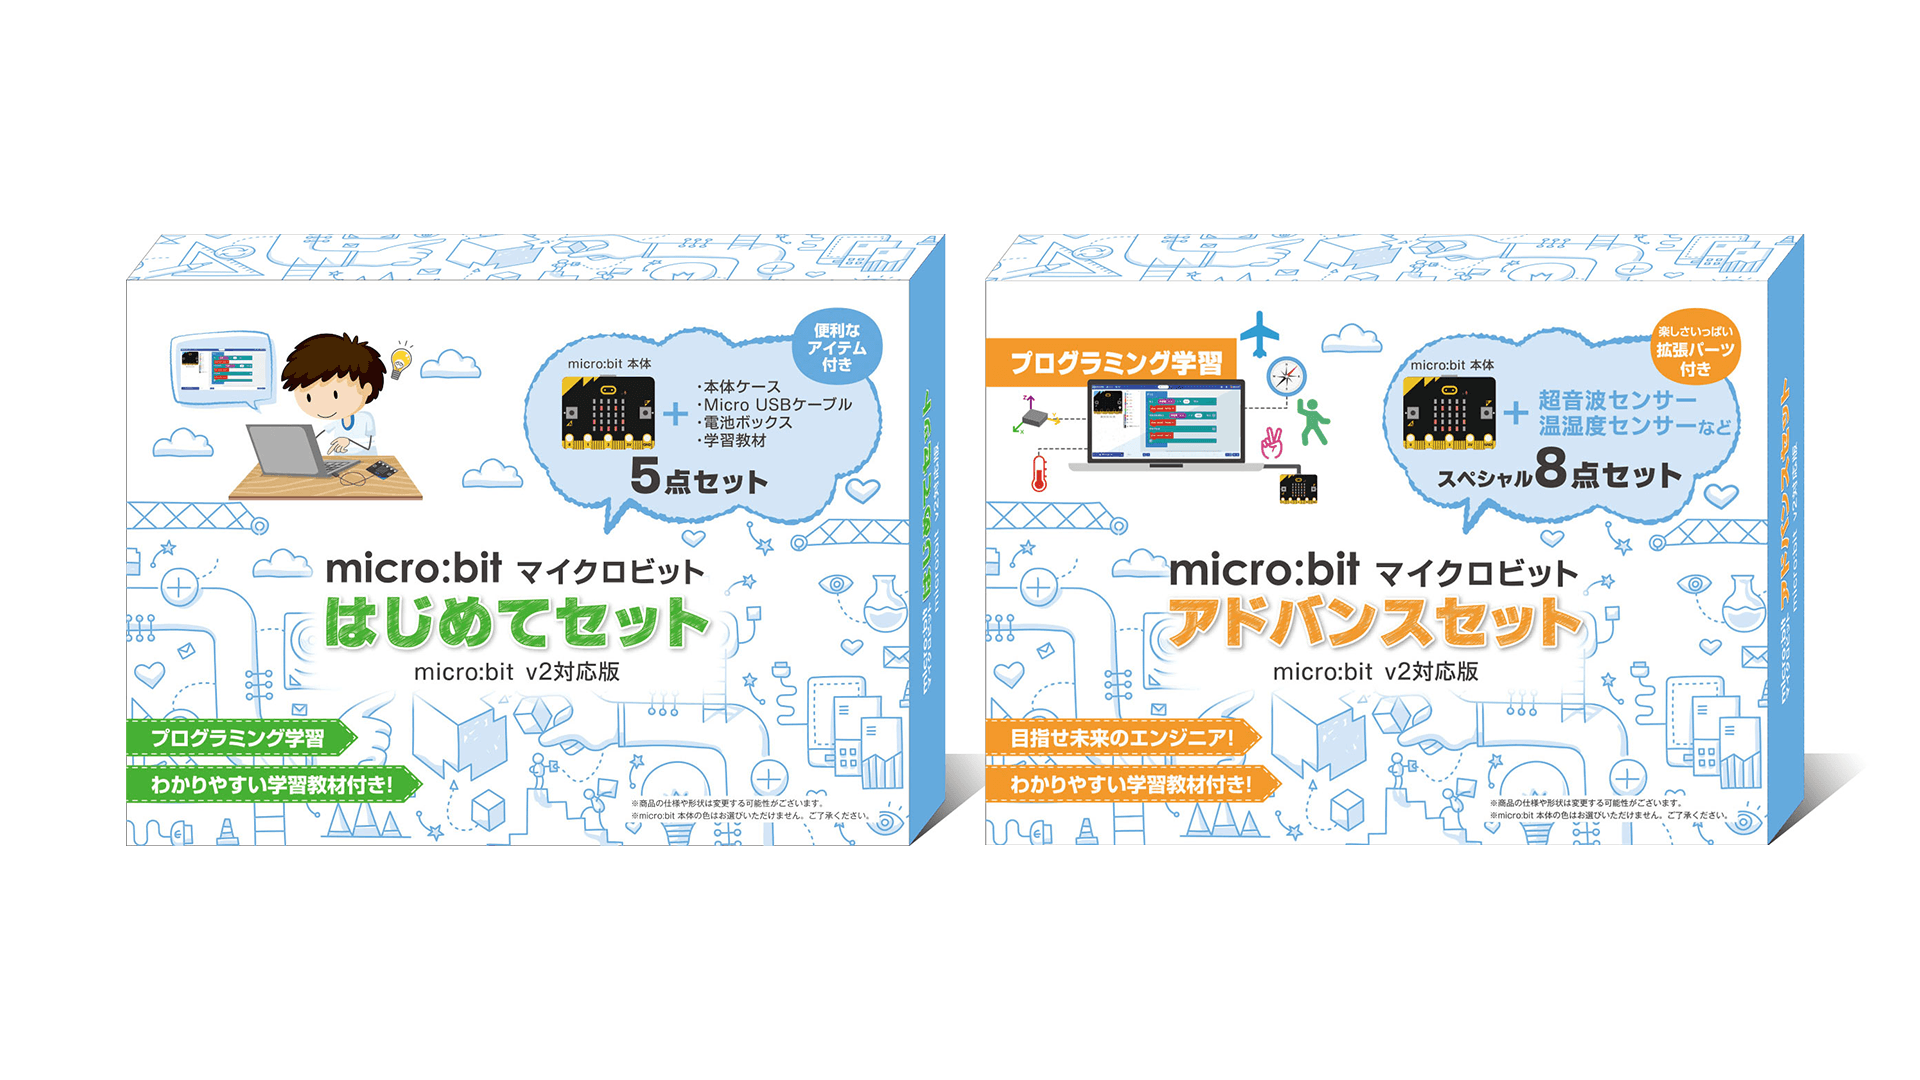 専門家と共同開発した学習用オリジナル教材入り、micro:bit v2対応版「micro:bit はじめてセット」と「micro:bit アドバンスセット」を発売のサブ画像1